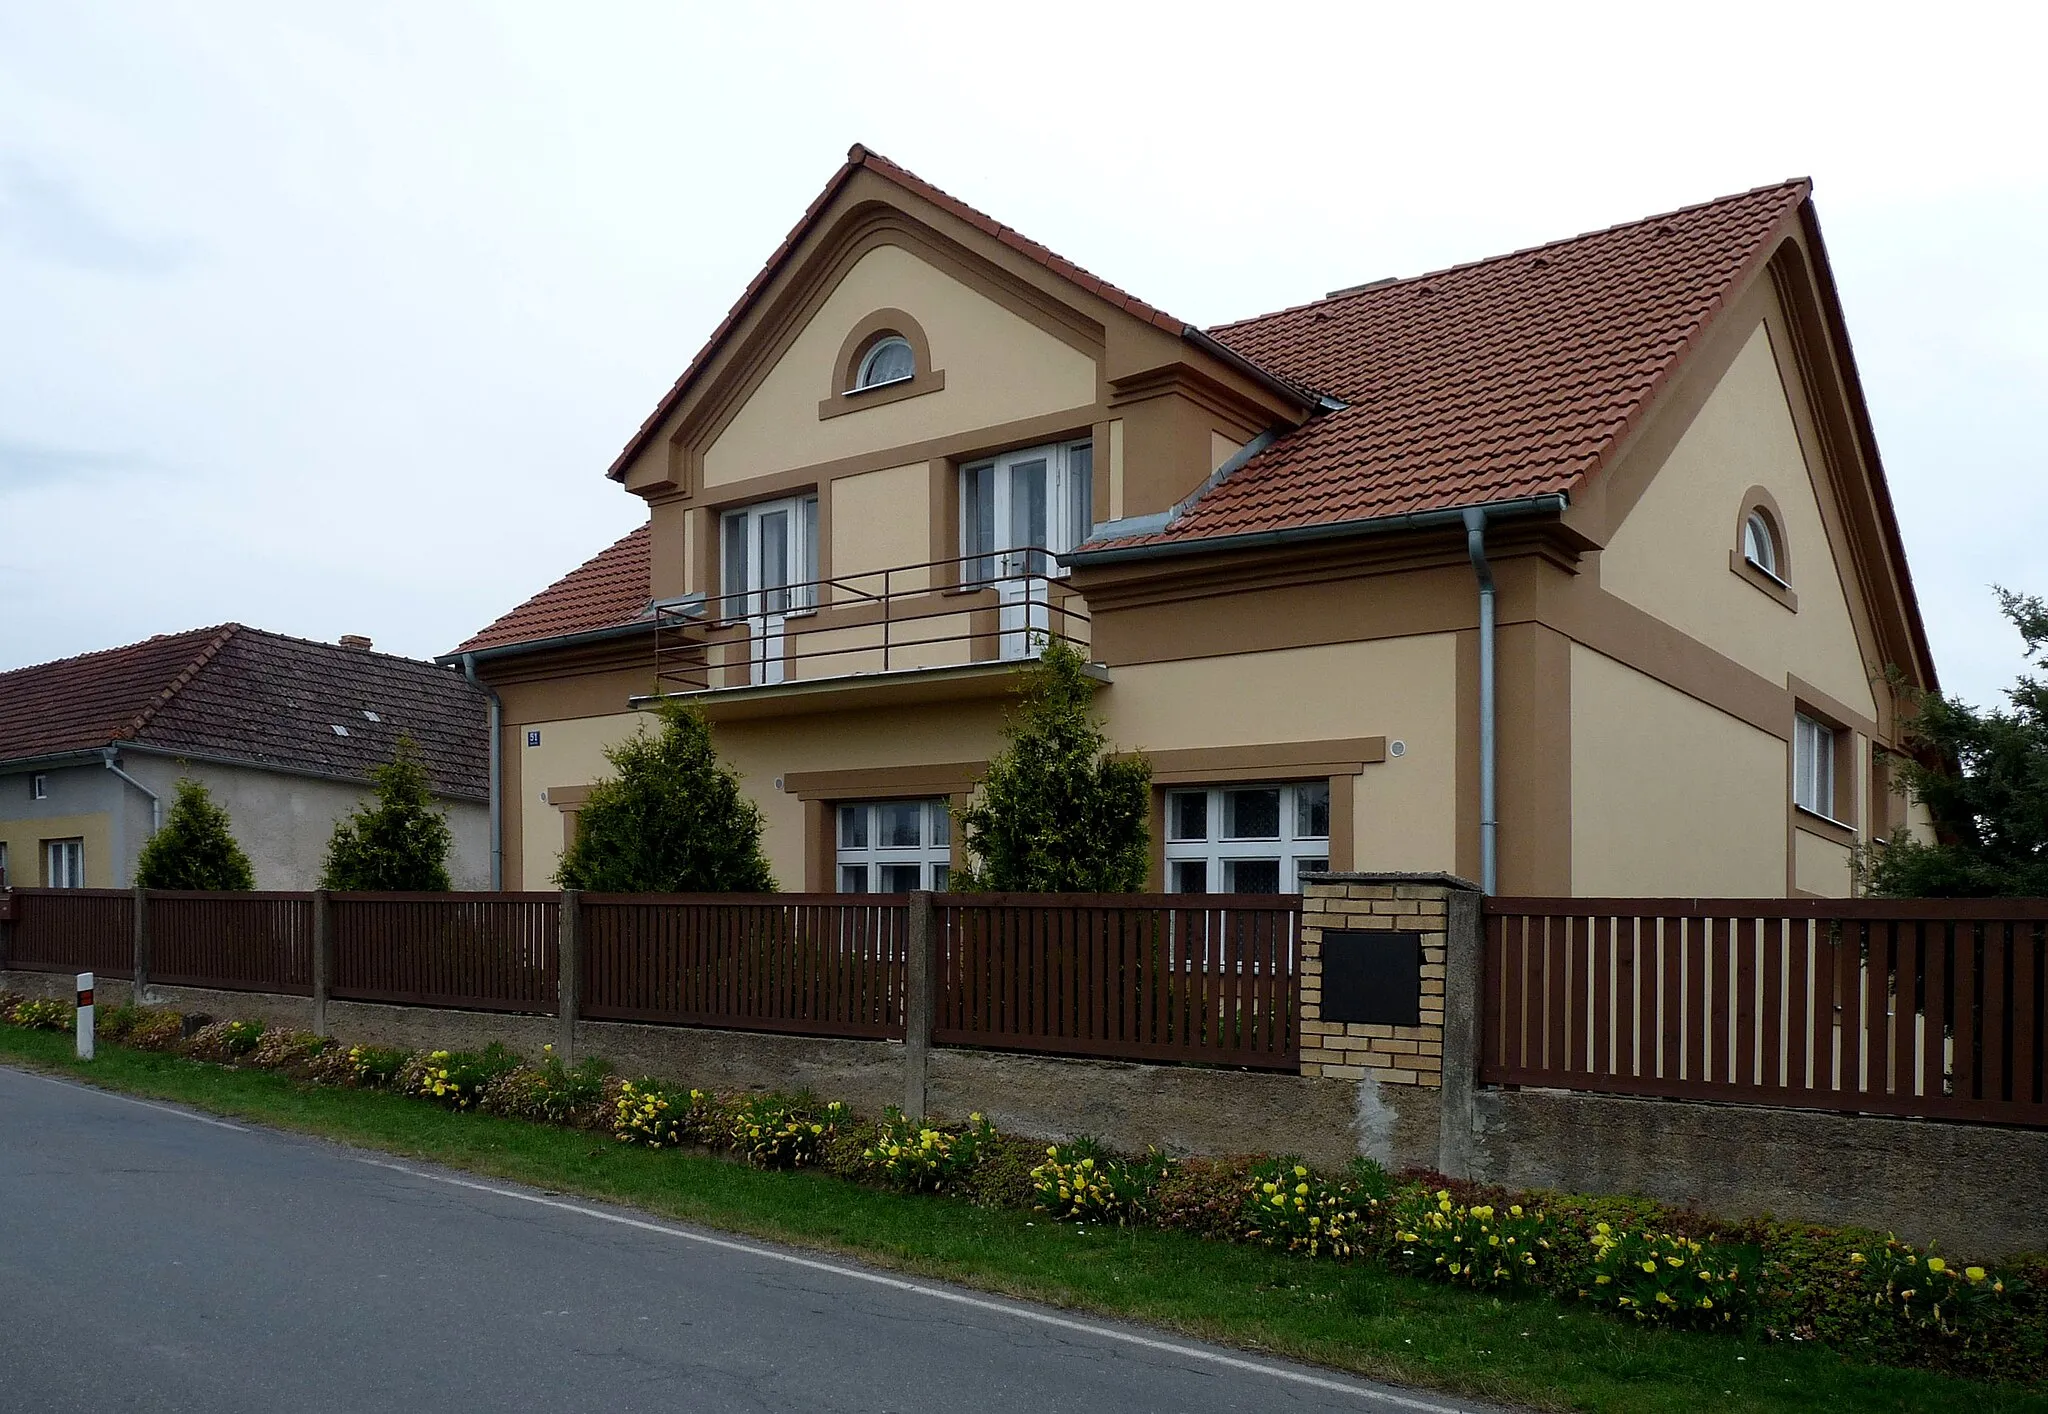 Photo showing: House No 51 in the vilage of Nuzice, České Budějovice District, South Bohemian Region, Czech Republic (part of the town of Týn nad Vltavou).